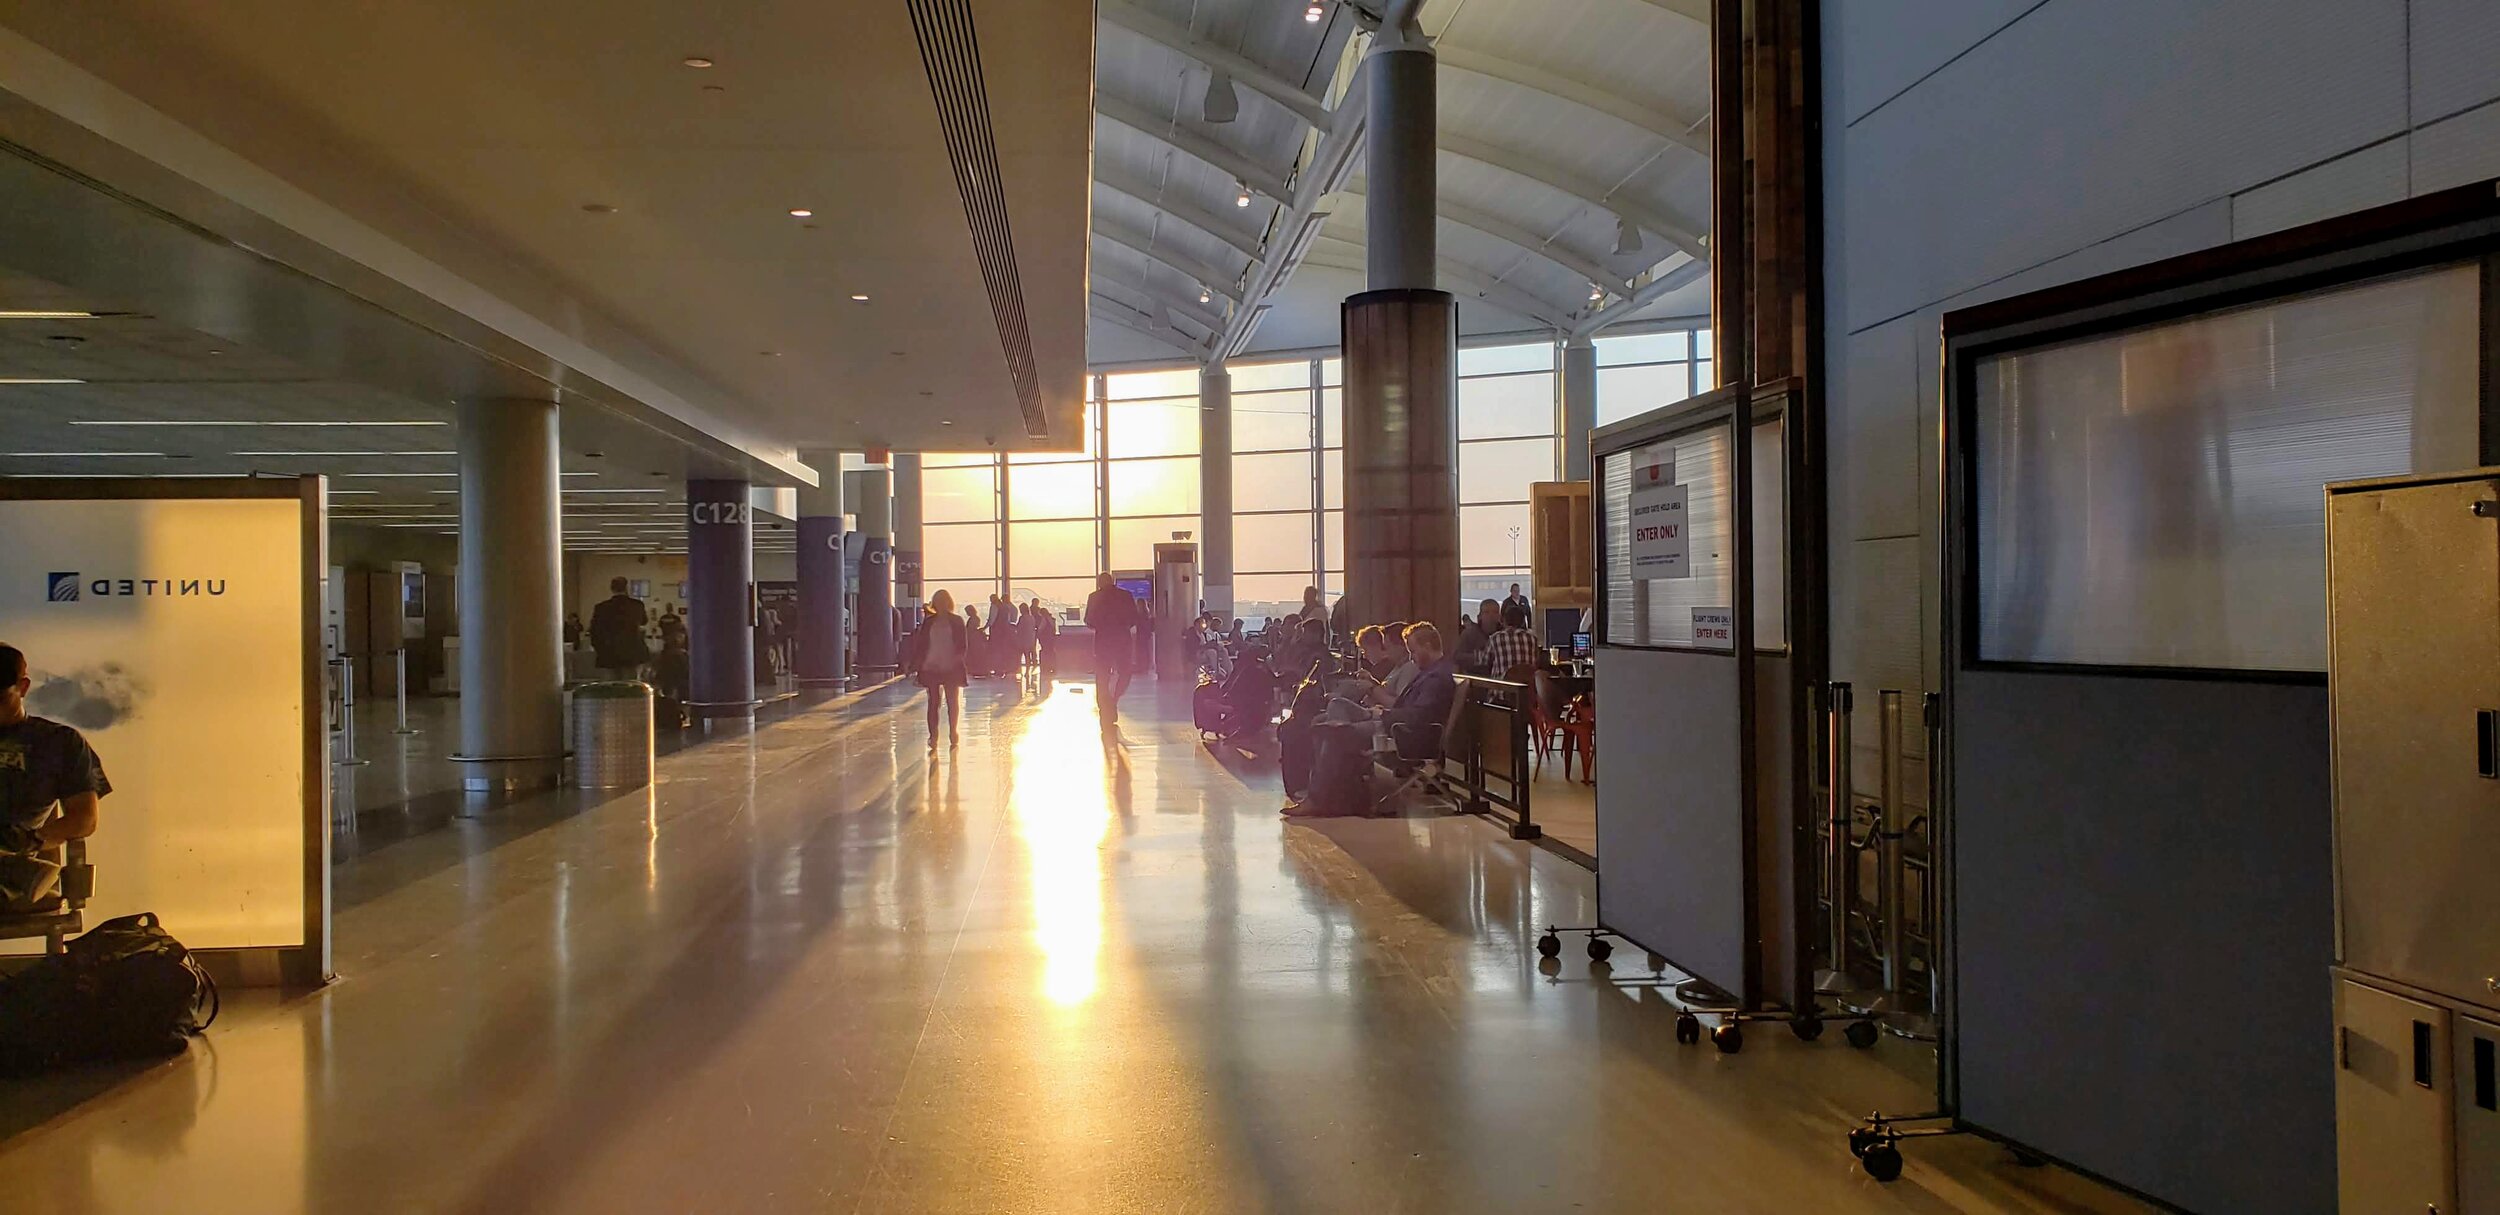 Newark Airport